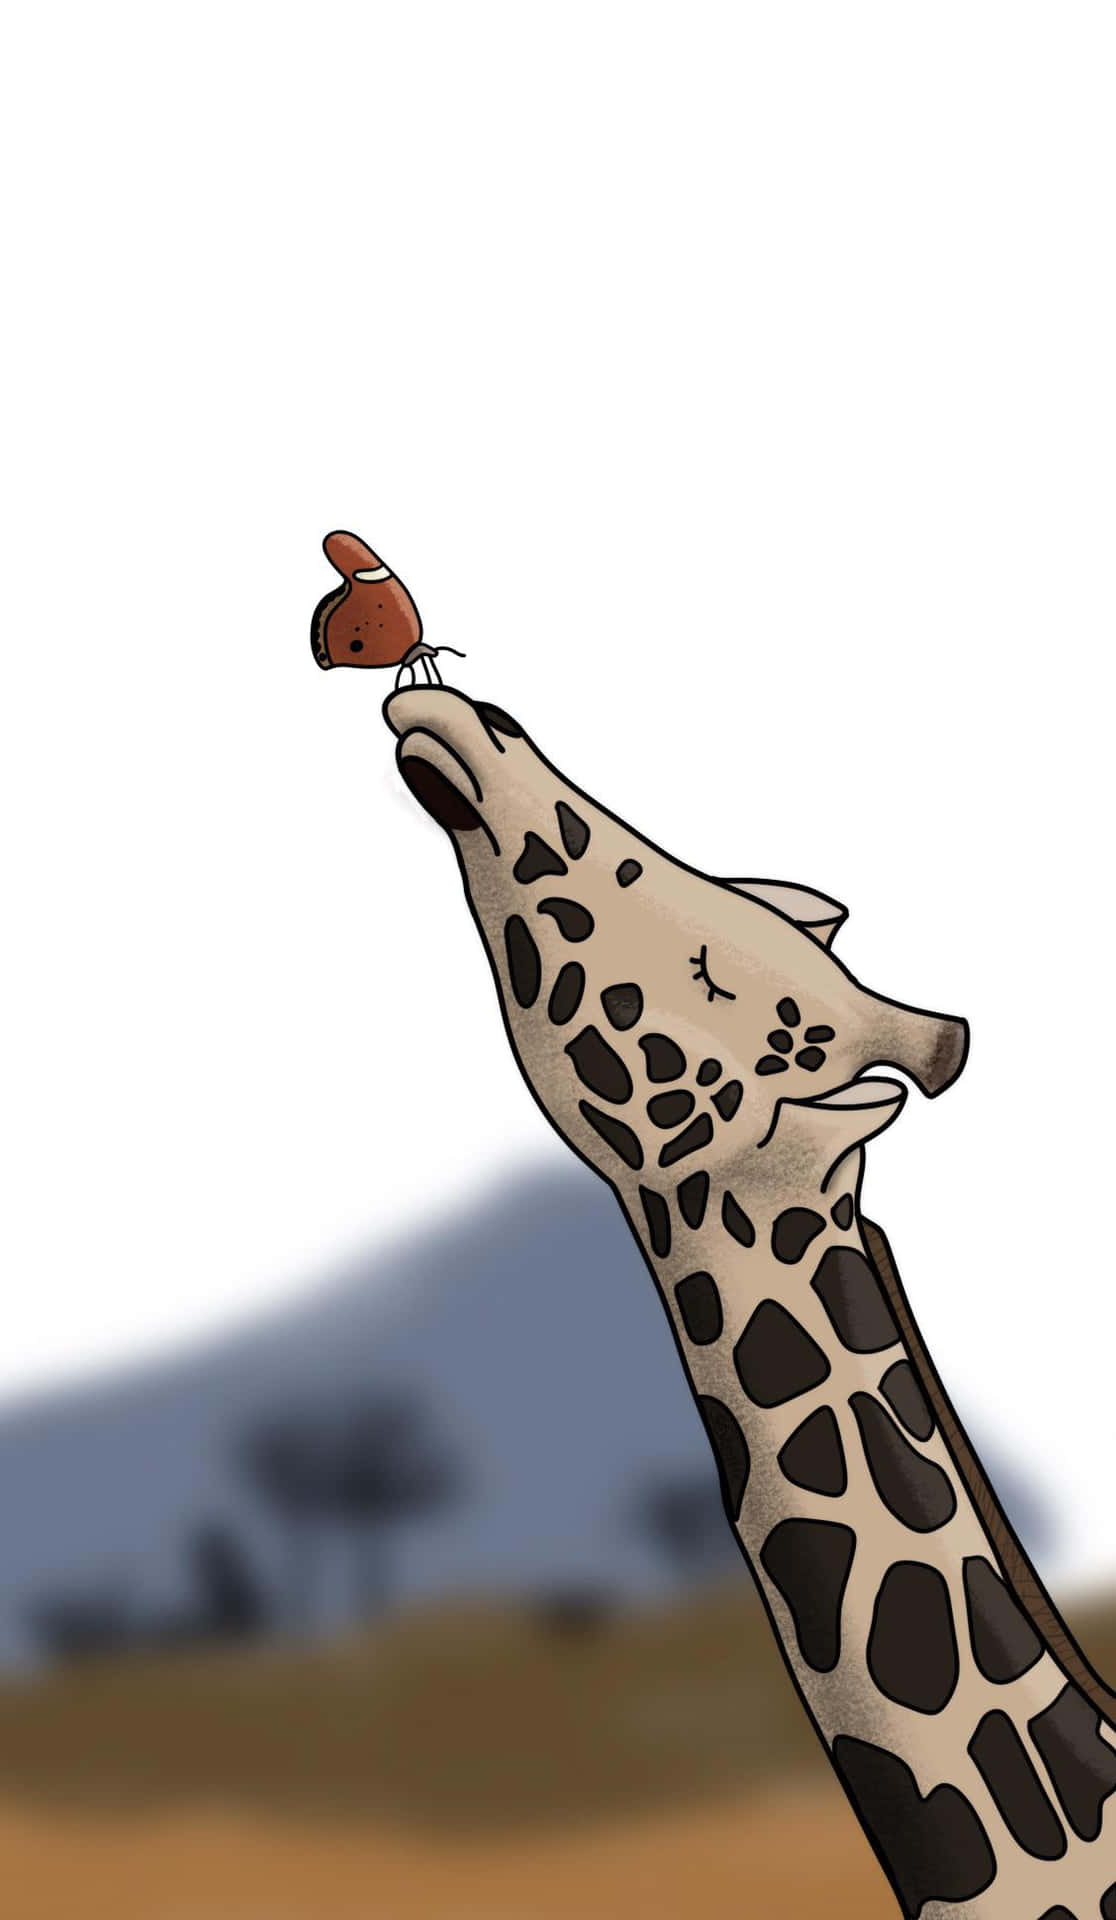 Desenhofofo De Girafa Com Imagem De Borboleta.